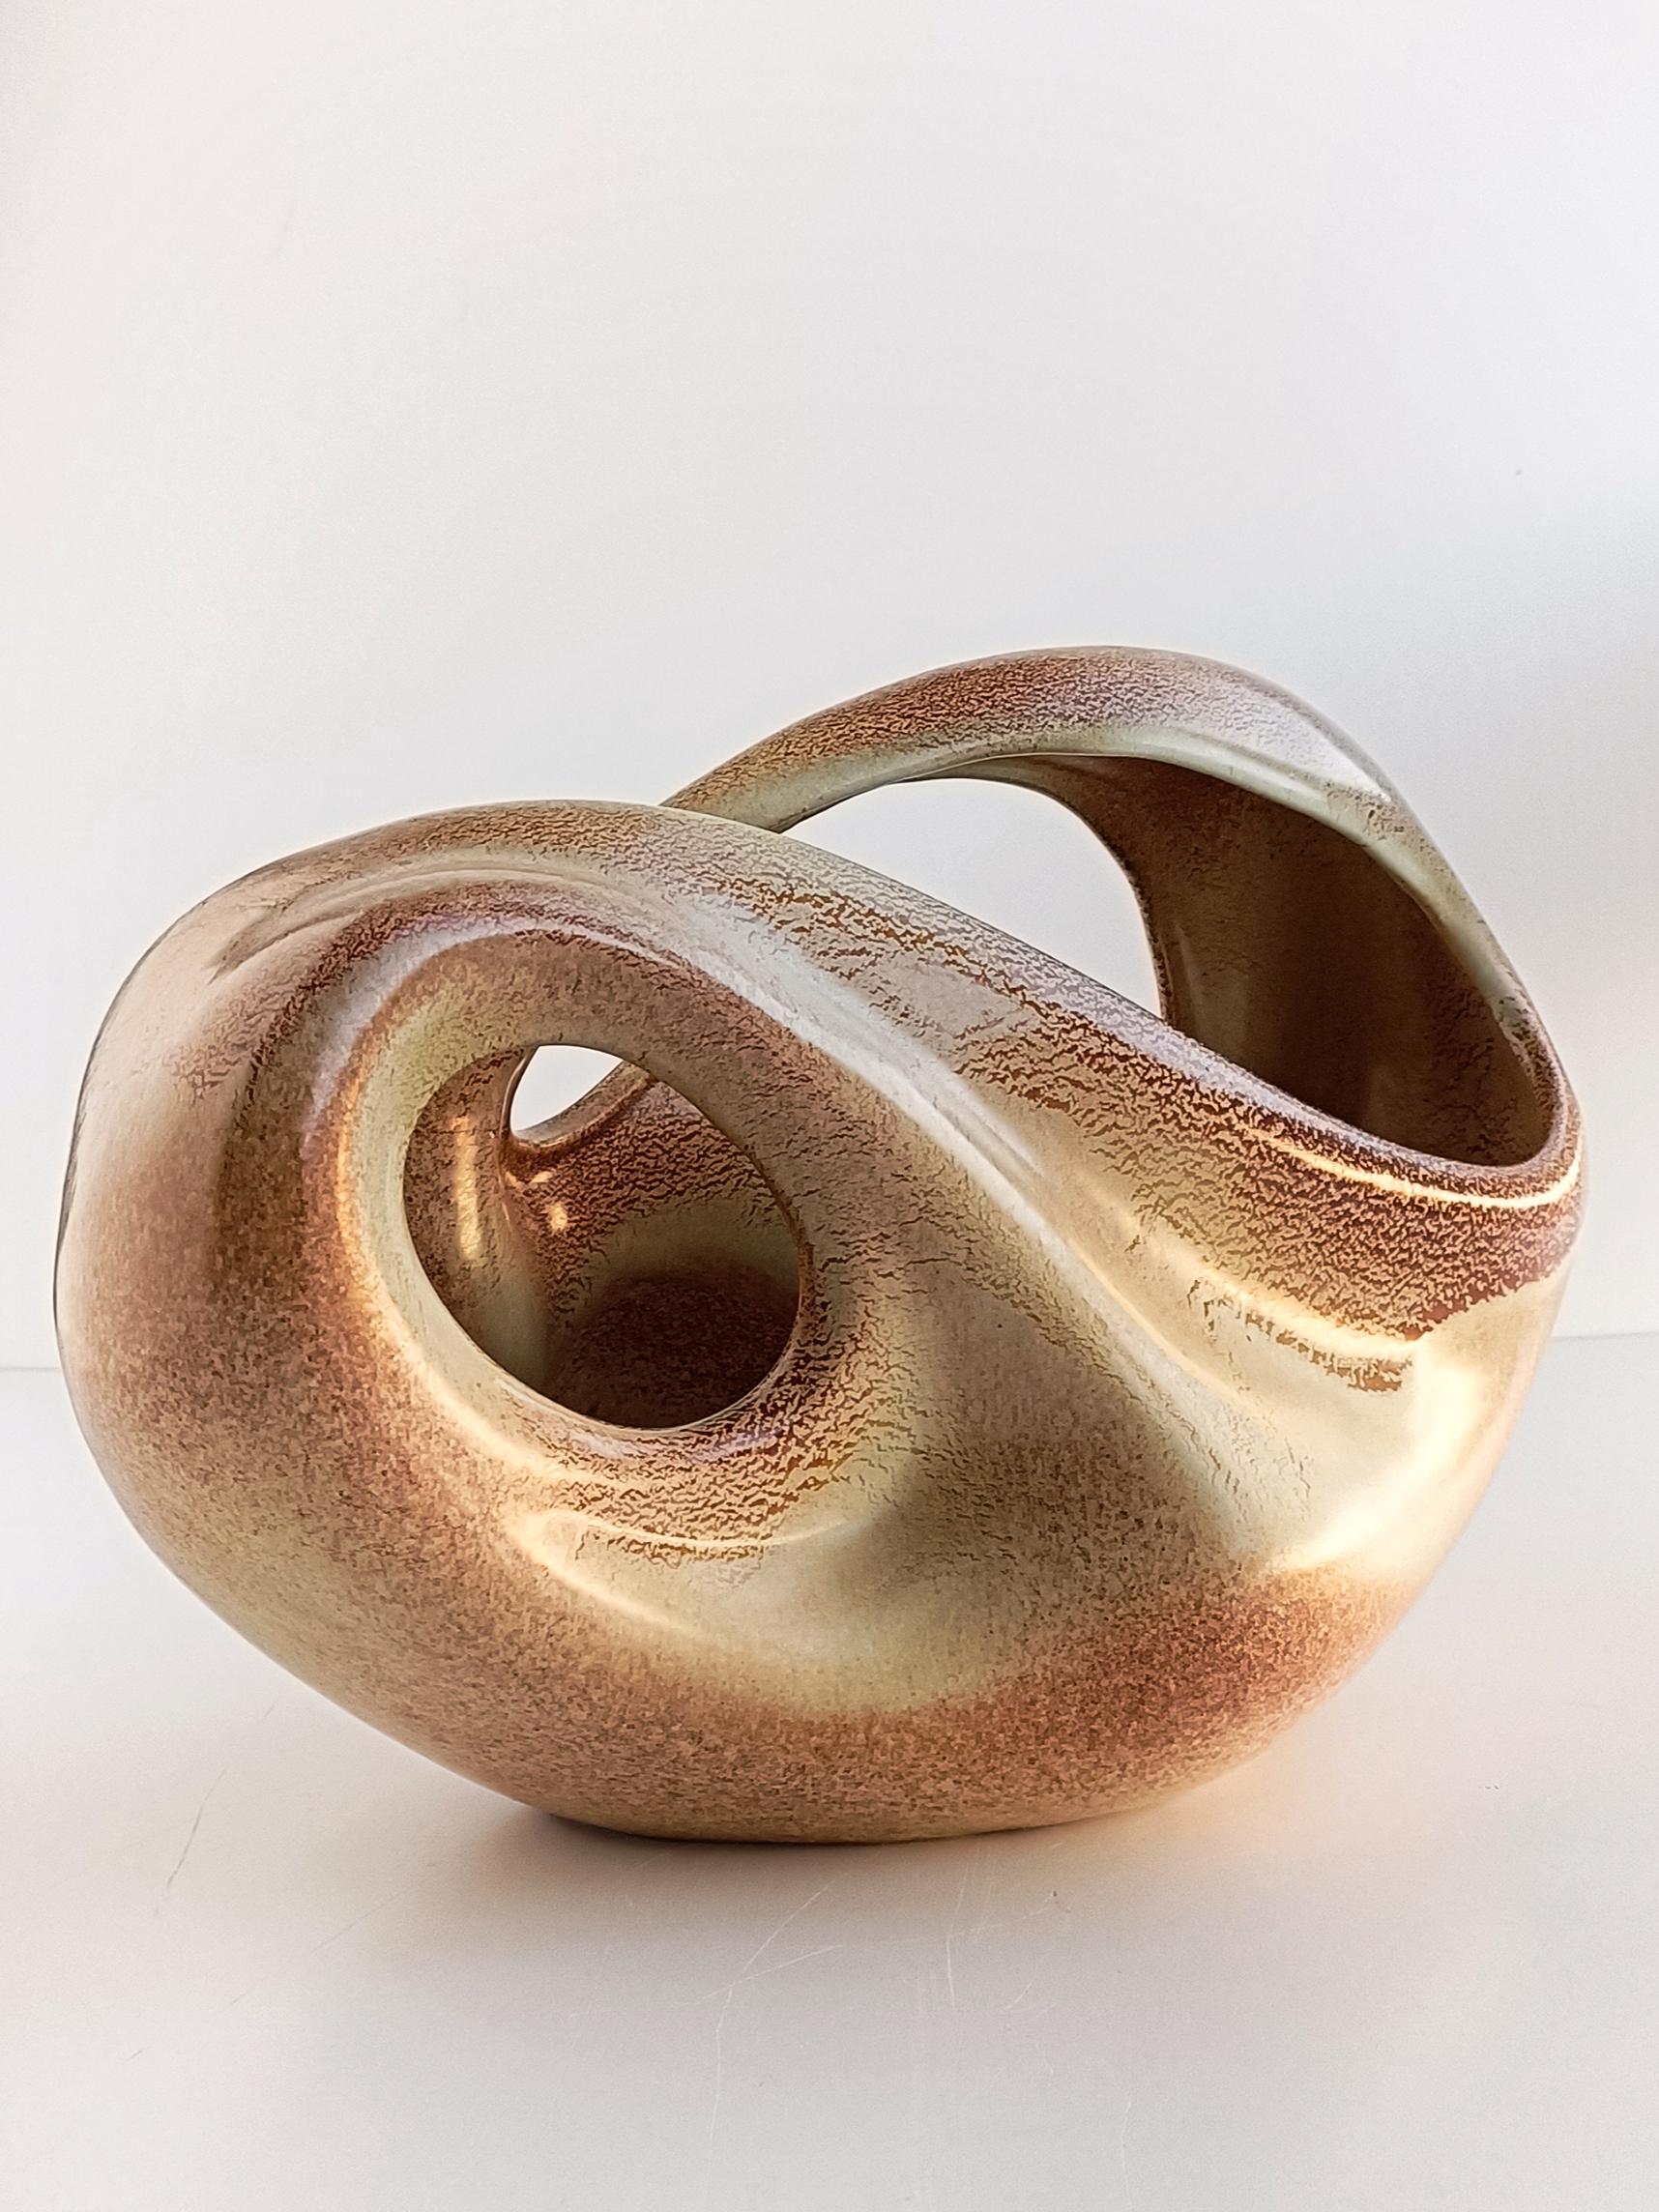 Ce vase sculptural en céramique de Bertoncello, datant des années 1960, est une pièce remarquable de l'art italien de la céramique. Roberto Rigon était un designer notable associé à Bertoncello, un fabricant de céramique renommé basé en Italie au